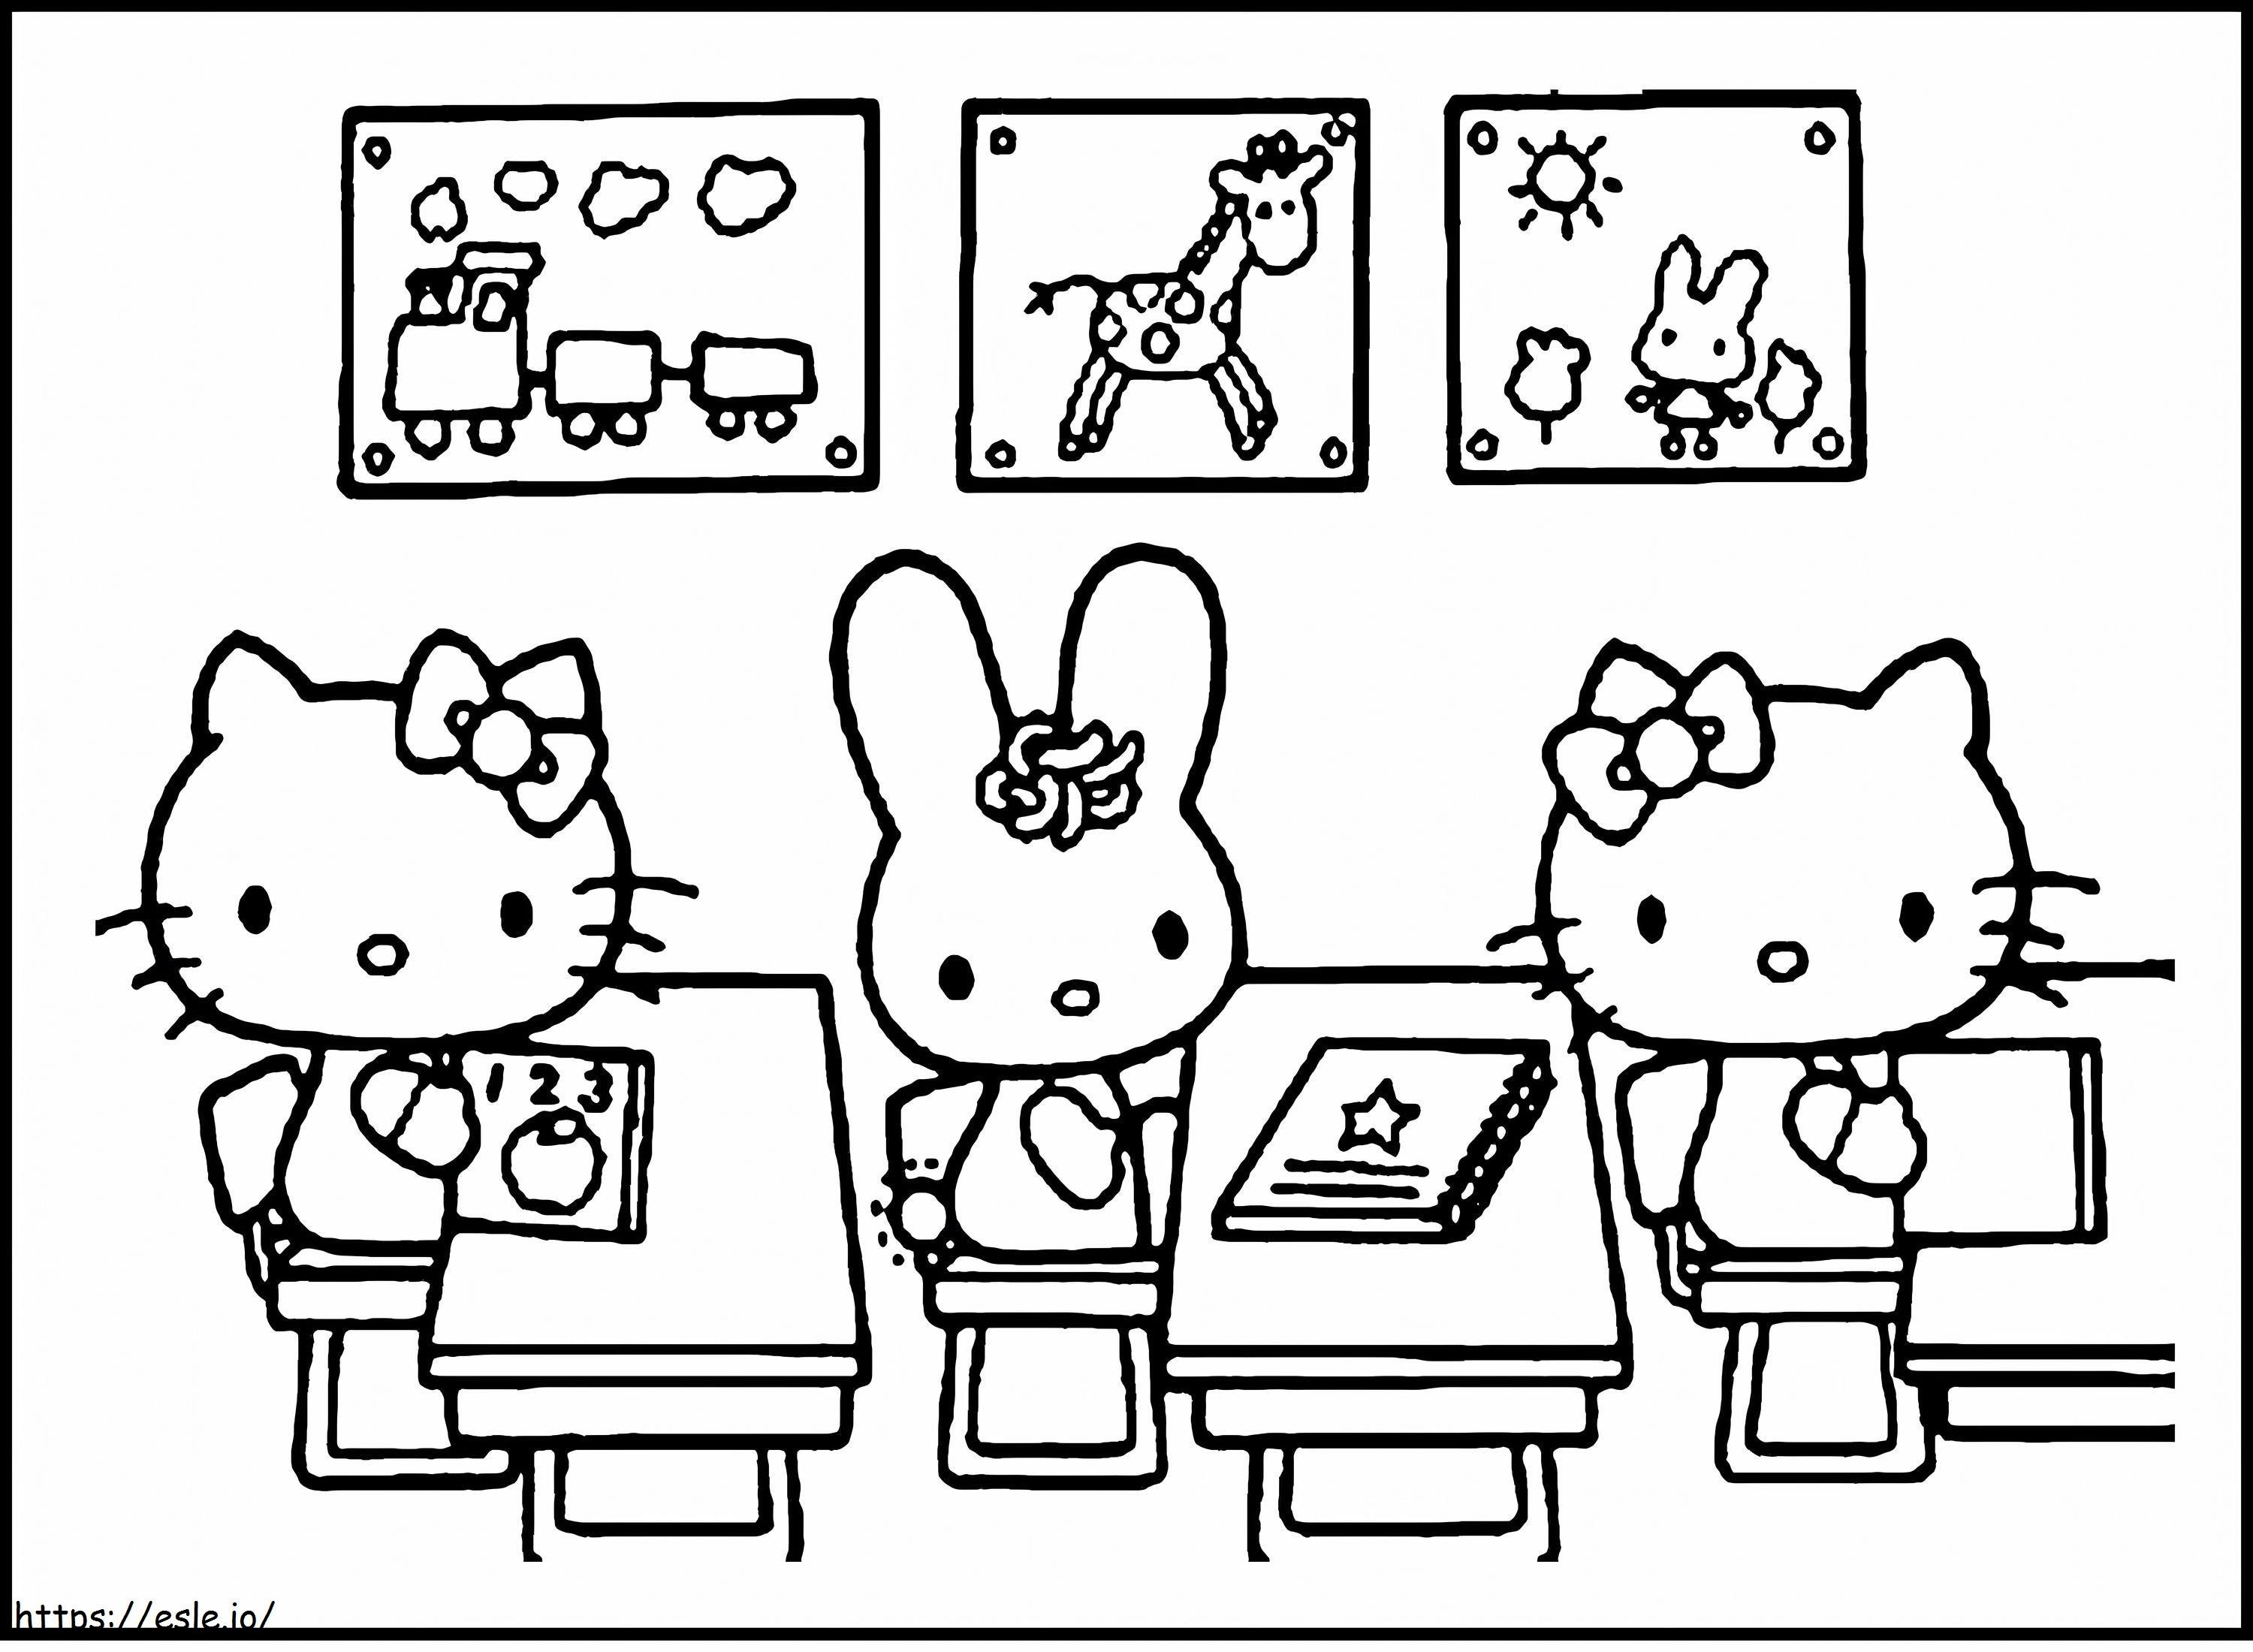 Hello Kitty e seus amigos sentados na sala de aula para colorir